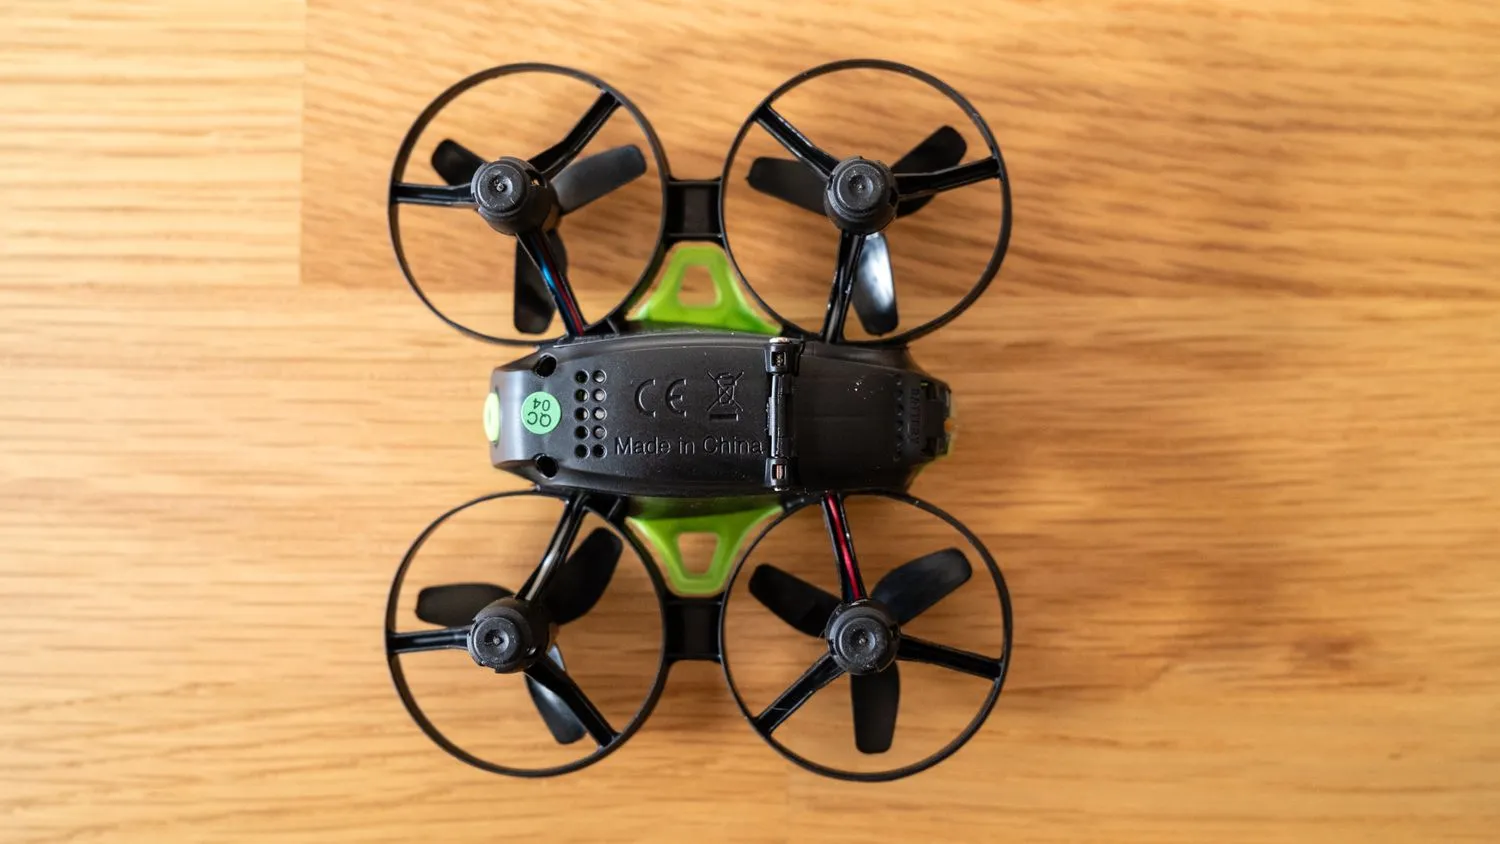 Potensic A20 Mini Drone zeigt die Unterseite der Drohne